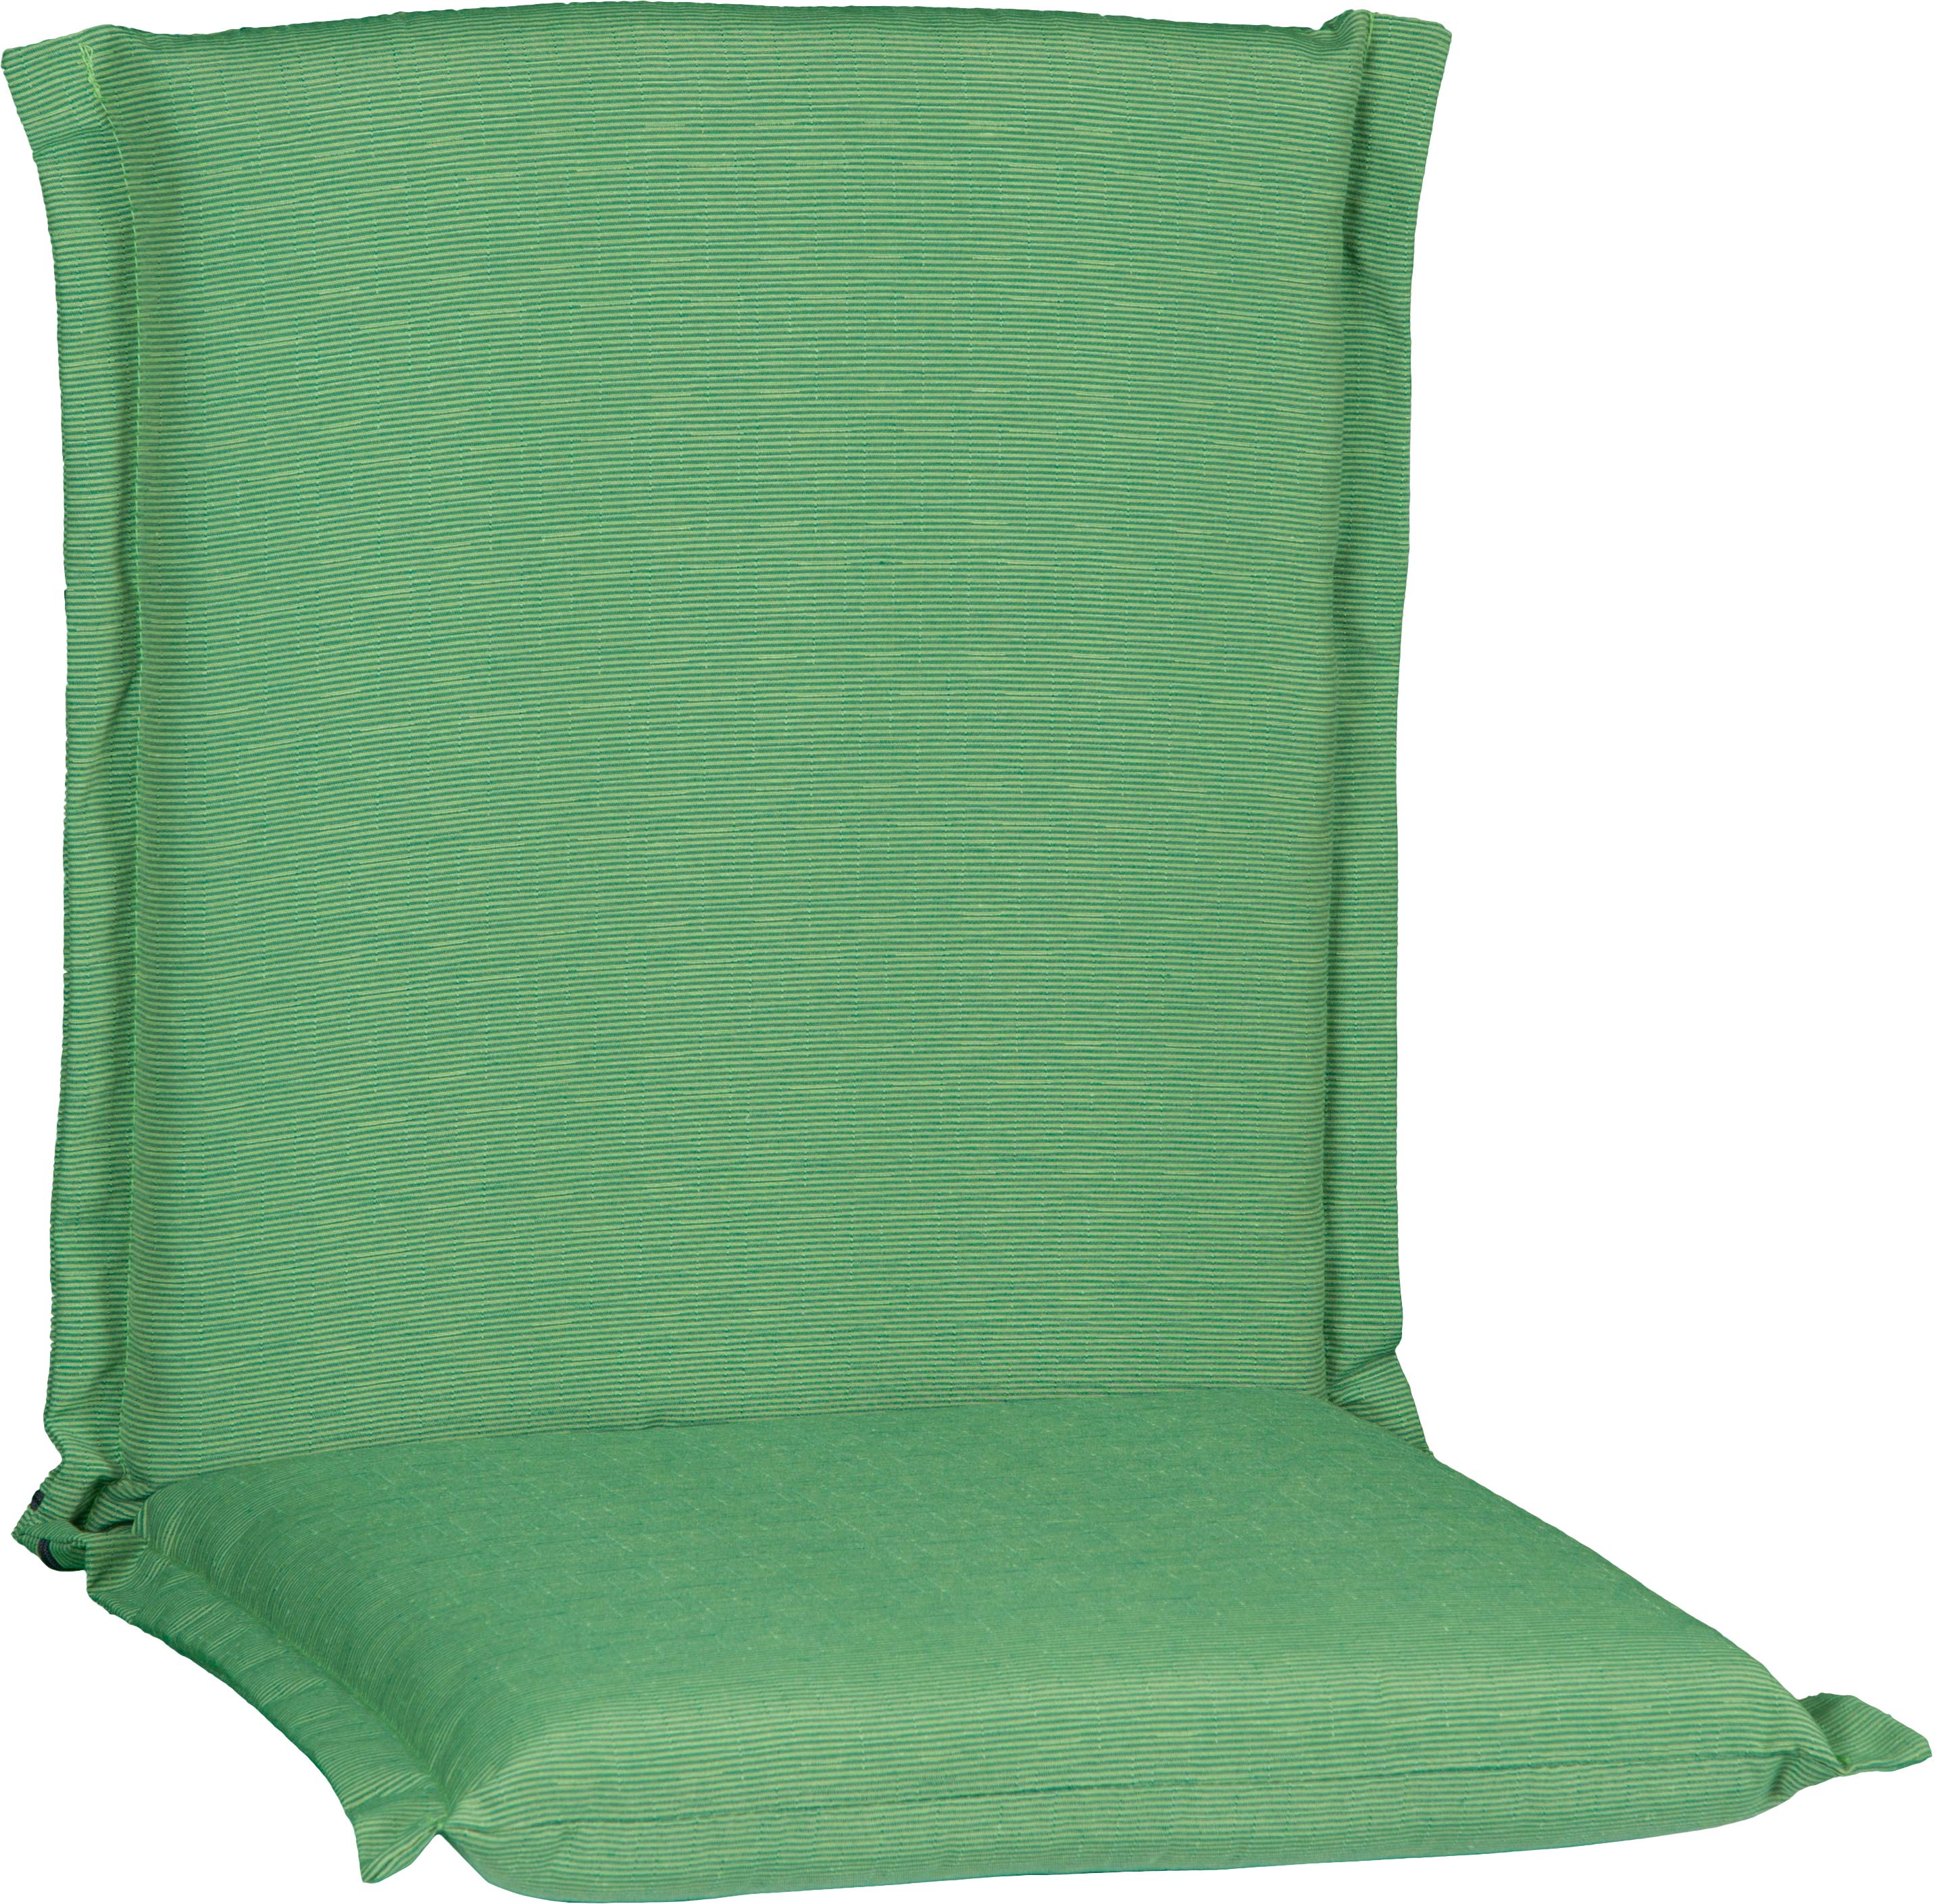 Sitzkissen für Niederlehner in hellgrün P211 Querstreifen Struktur Bezug abnehmbar durch Reissverschlüsse 